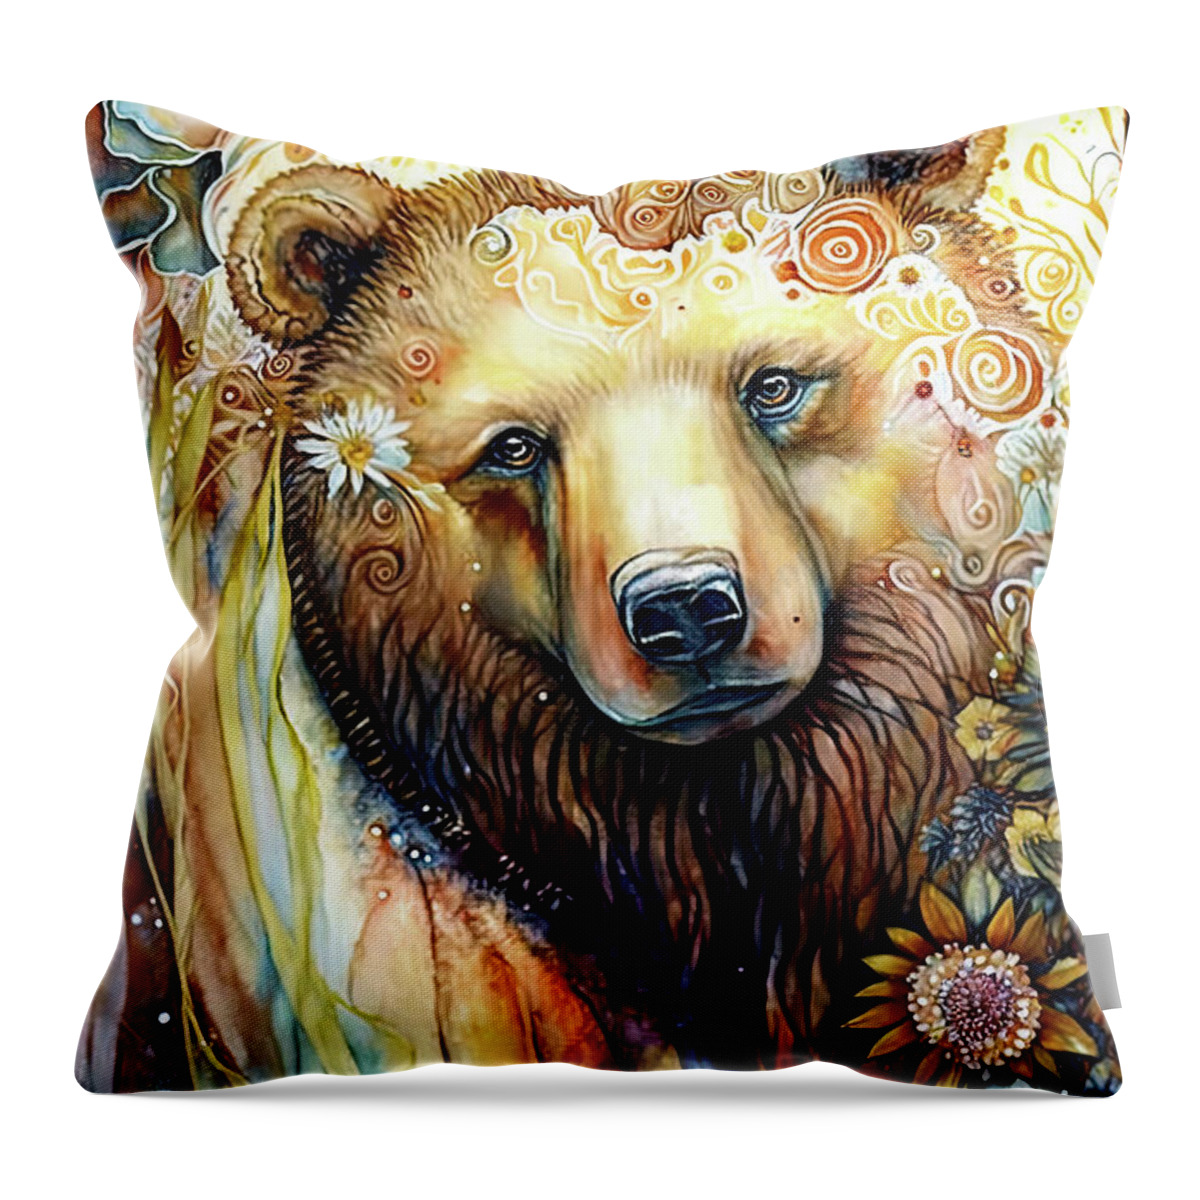 Brown Bear Throw Pillow featuring the painting Beautiful Spirit Bear by Tina LeCour